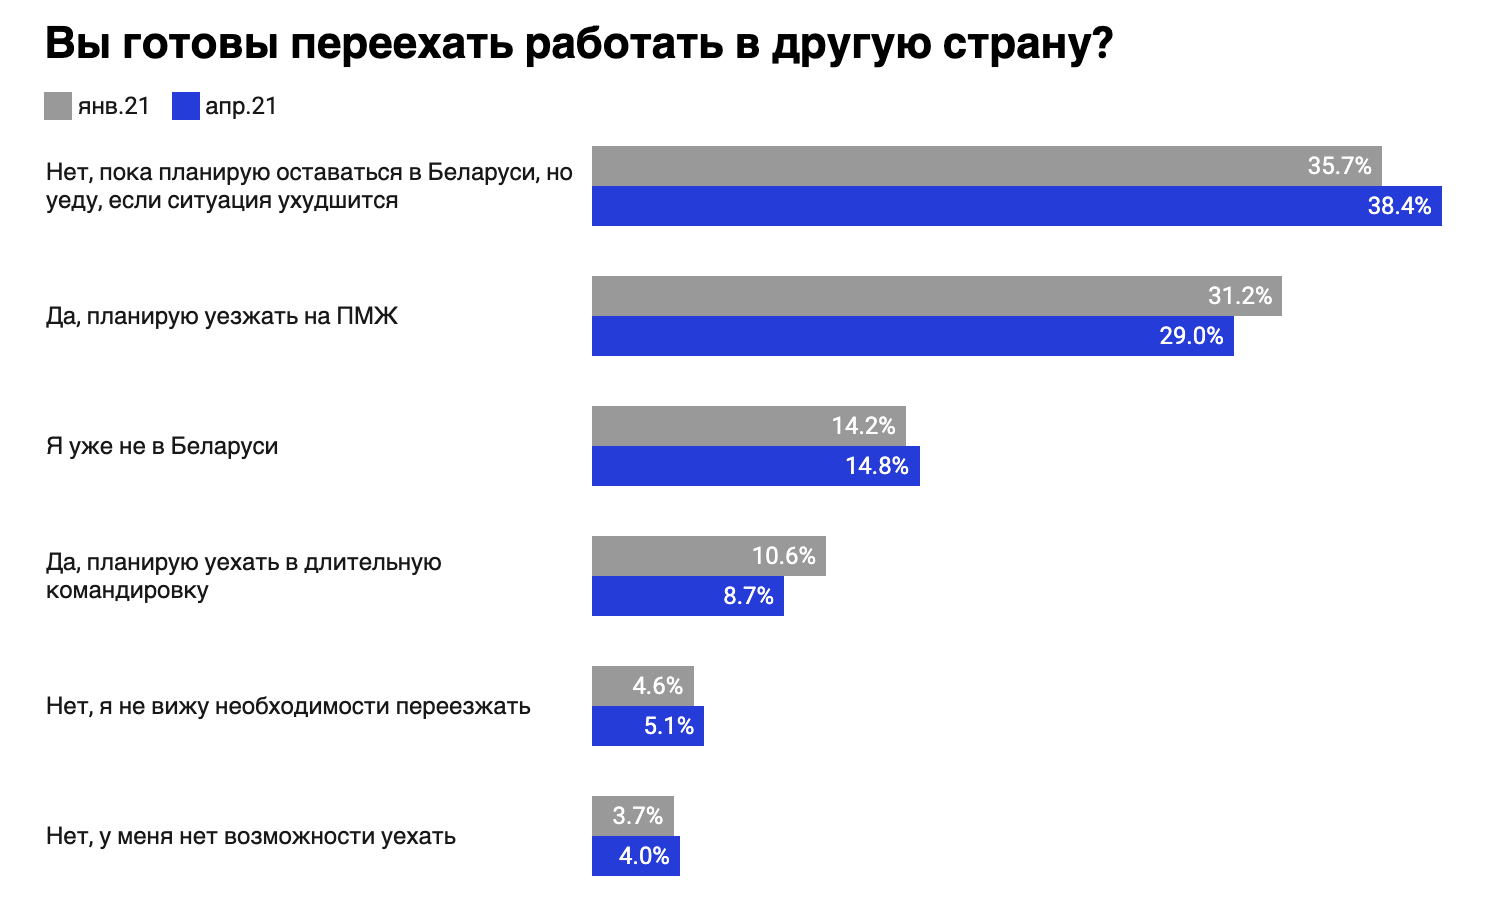 Сми2 новостной агрегатор все главные украина. Какой канал на втором месте по популярности.